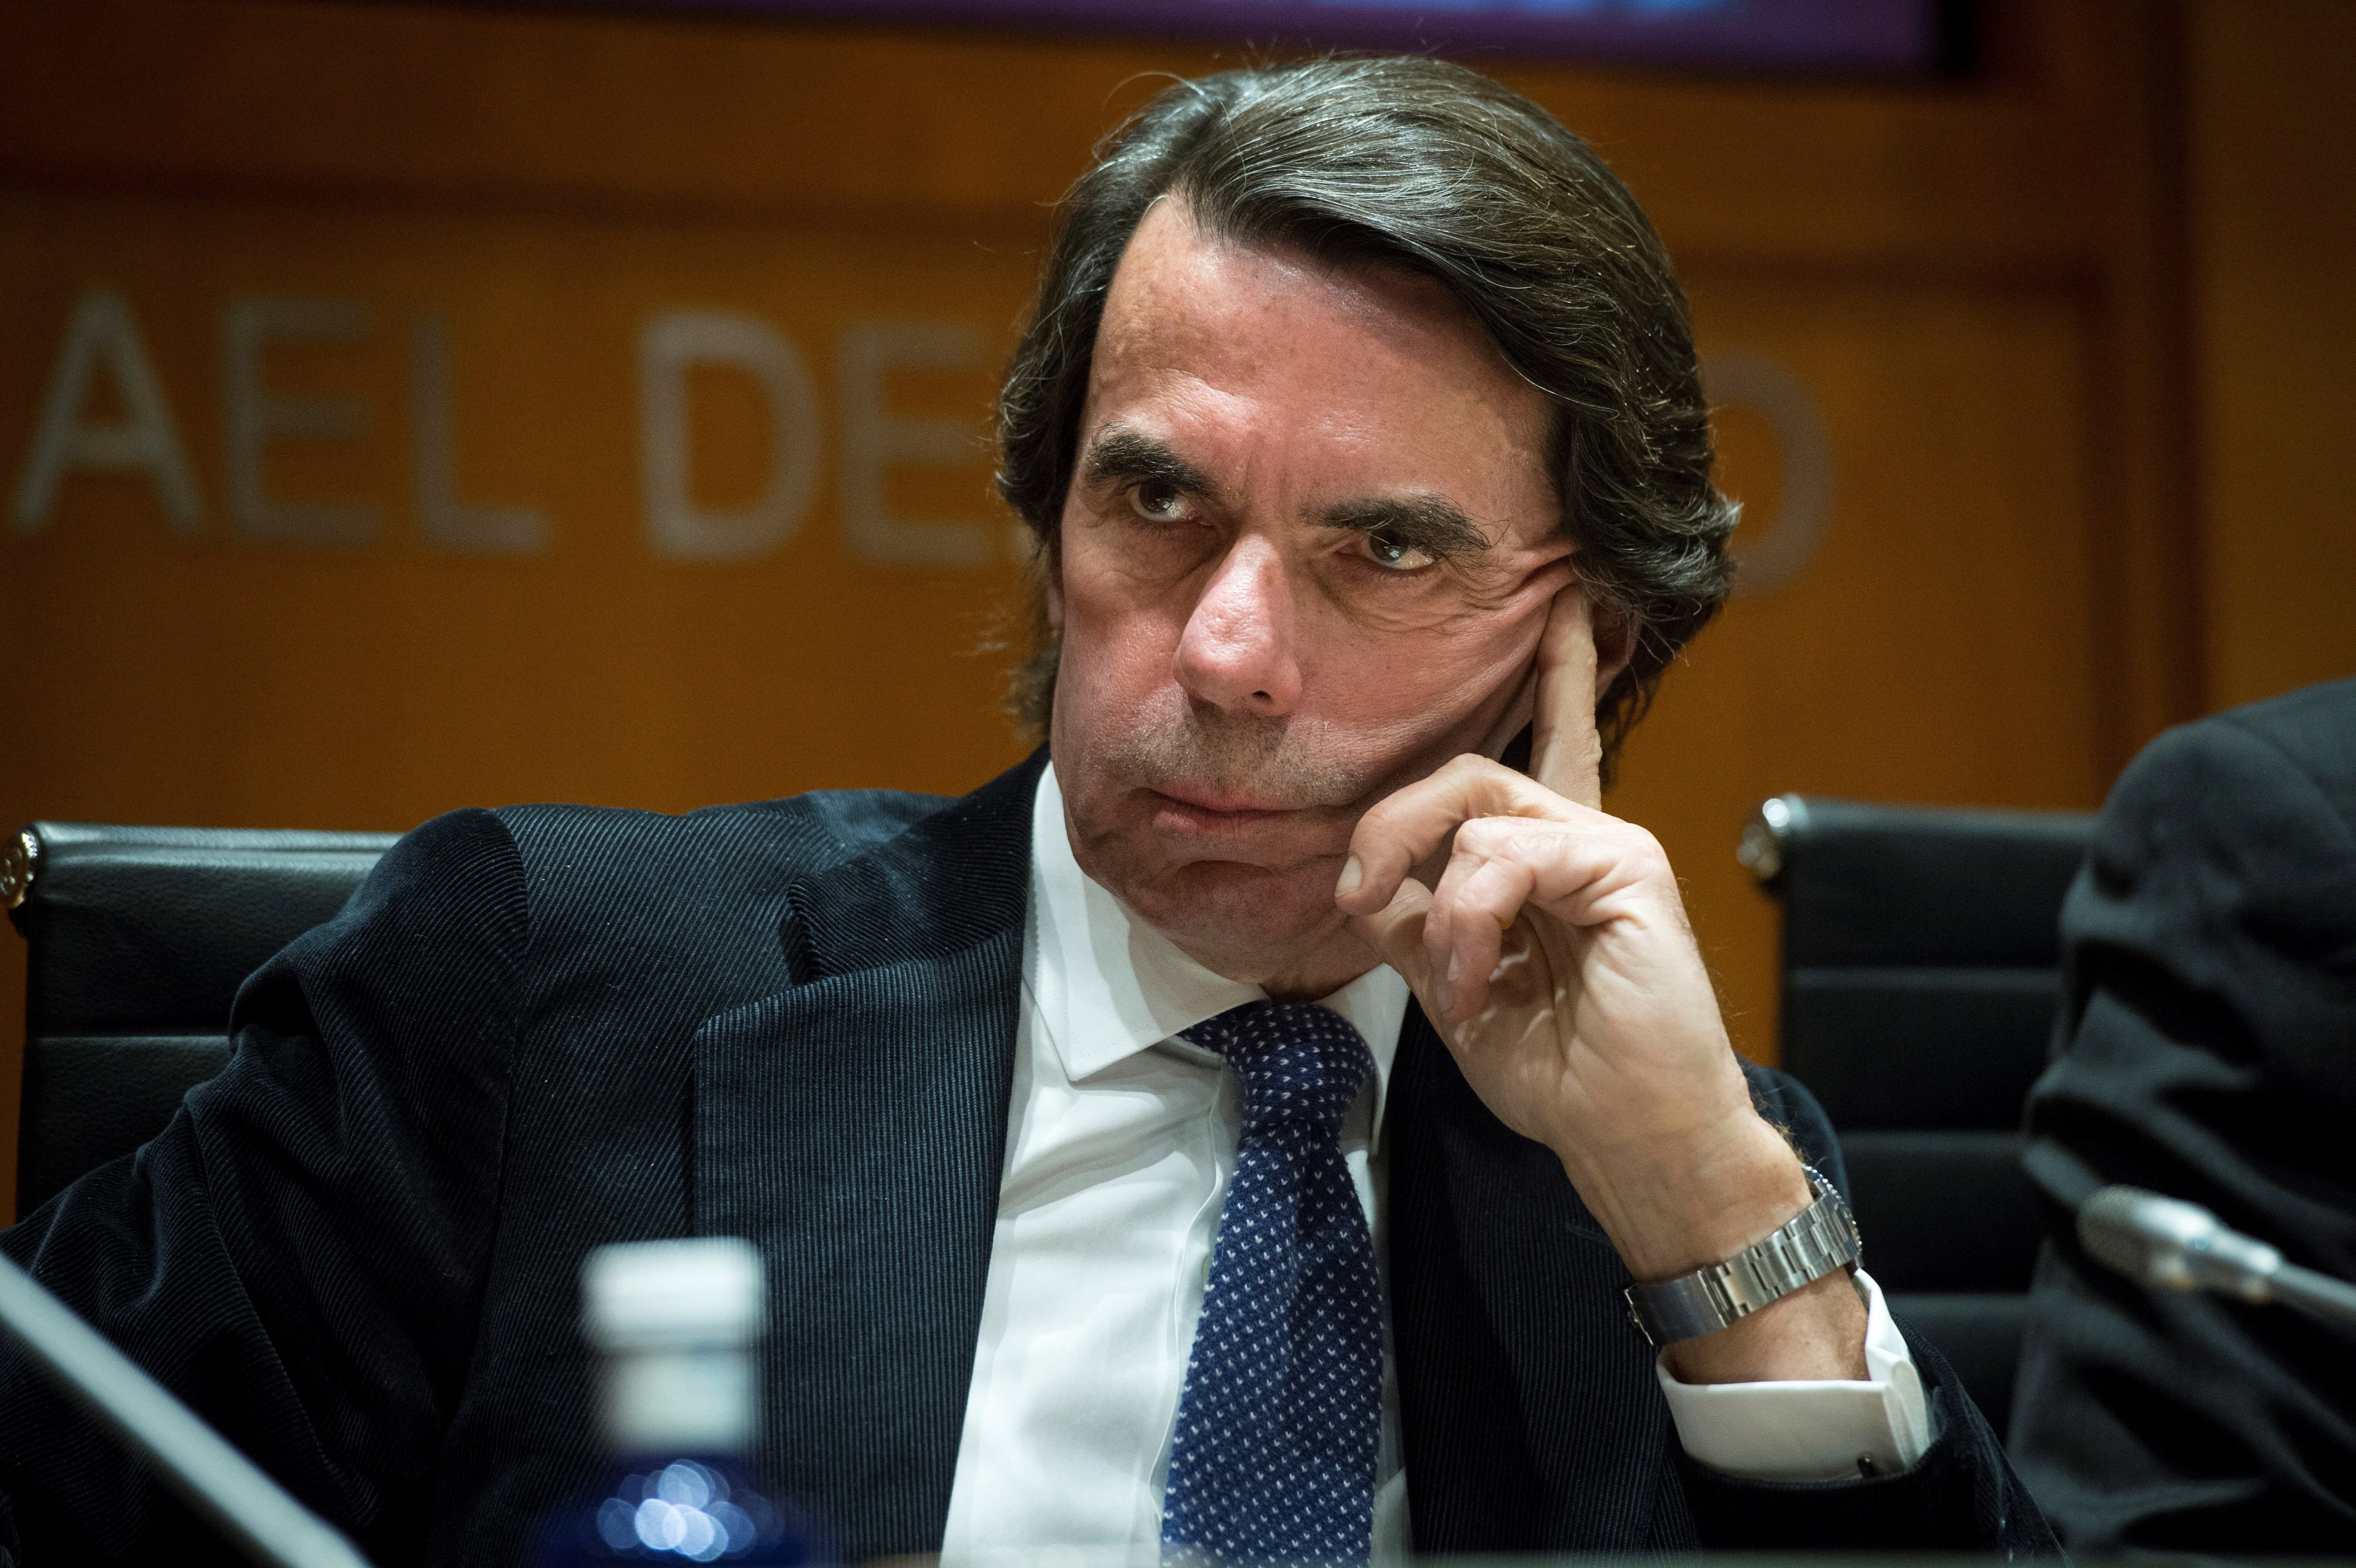 Qui entrevista Aznar al ‘Wall Street Journal’ és... “el corresponsal favorit d’Aznar”